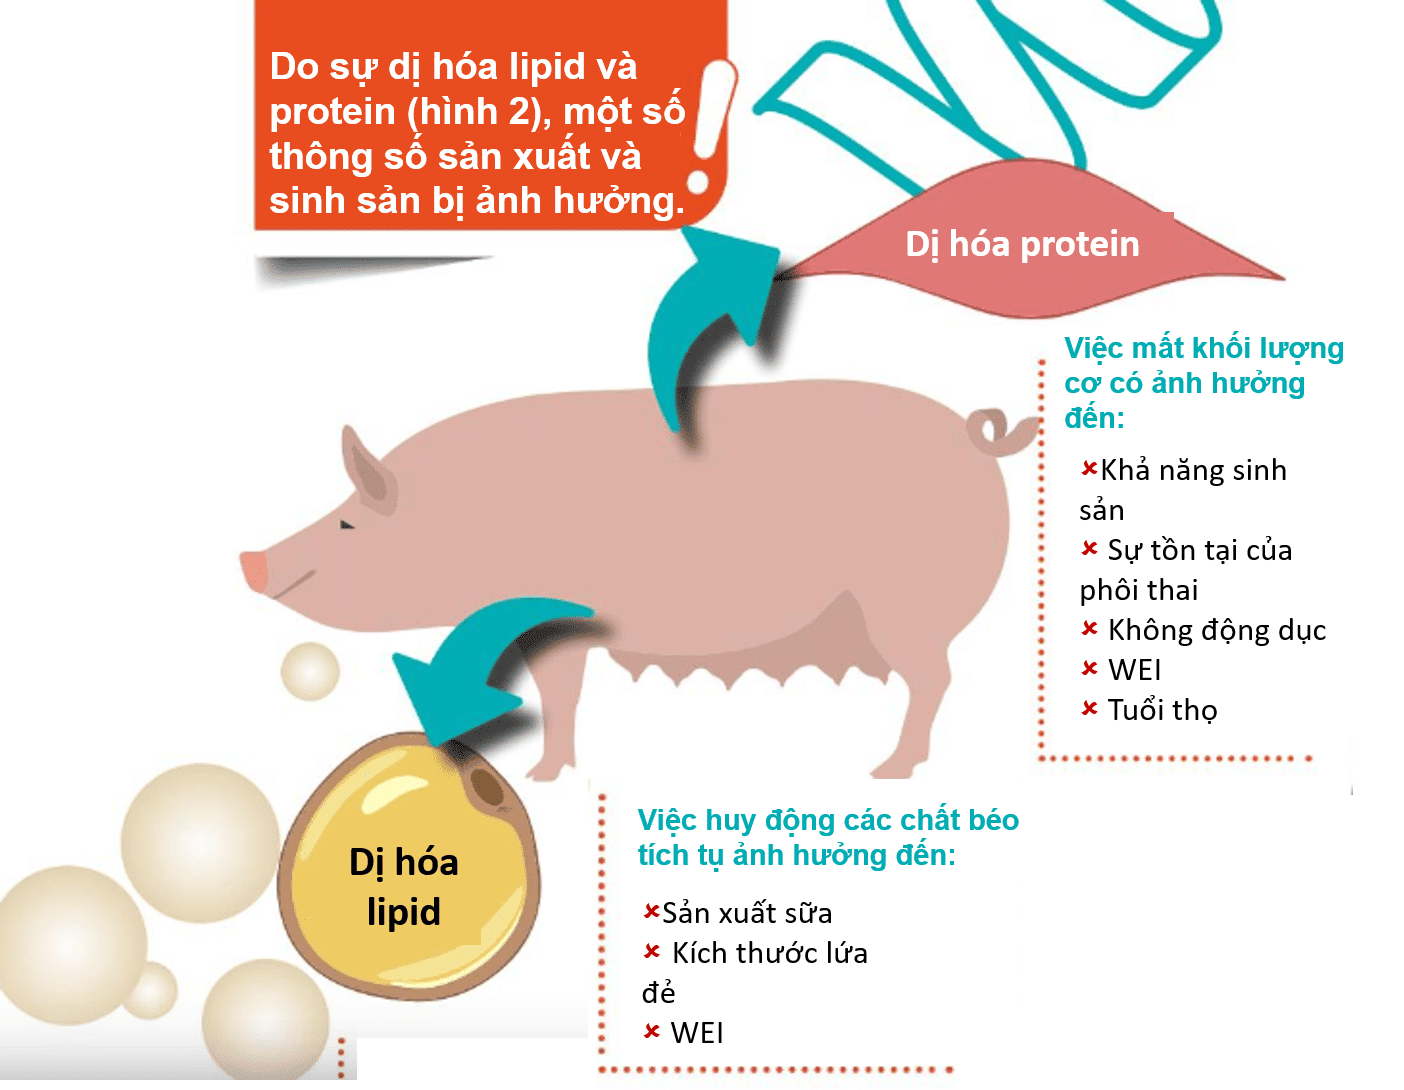 Hình 2: Các dạng dị hóa trong quá trình tiết sữa và các thông số sản xuất / sinh sản bị ảnh hưởng.